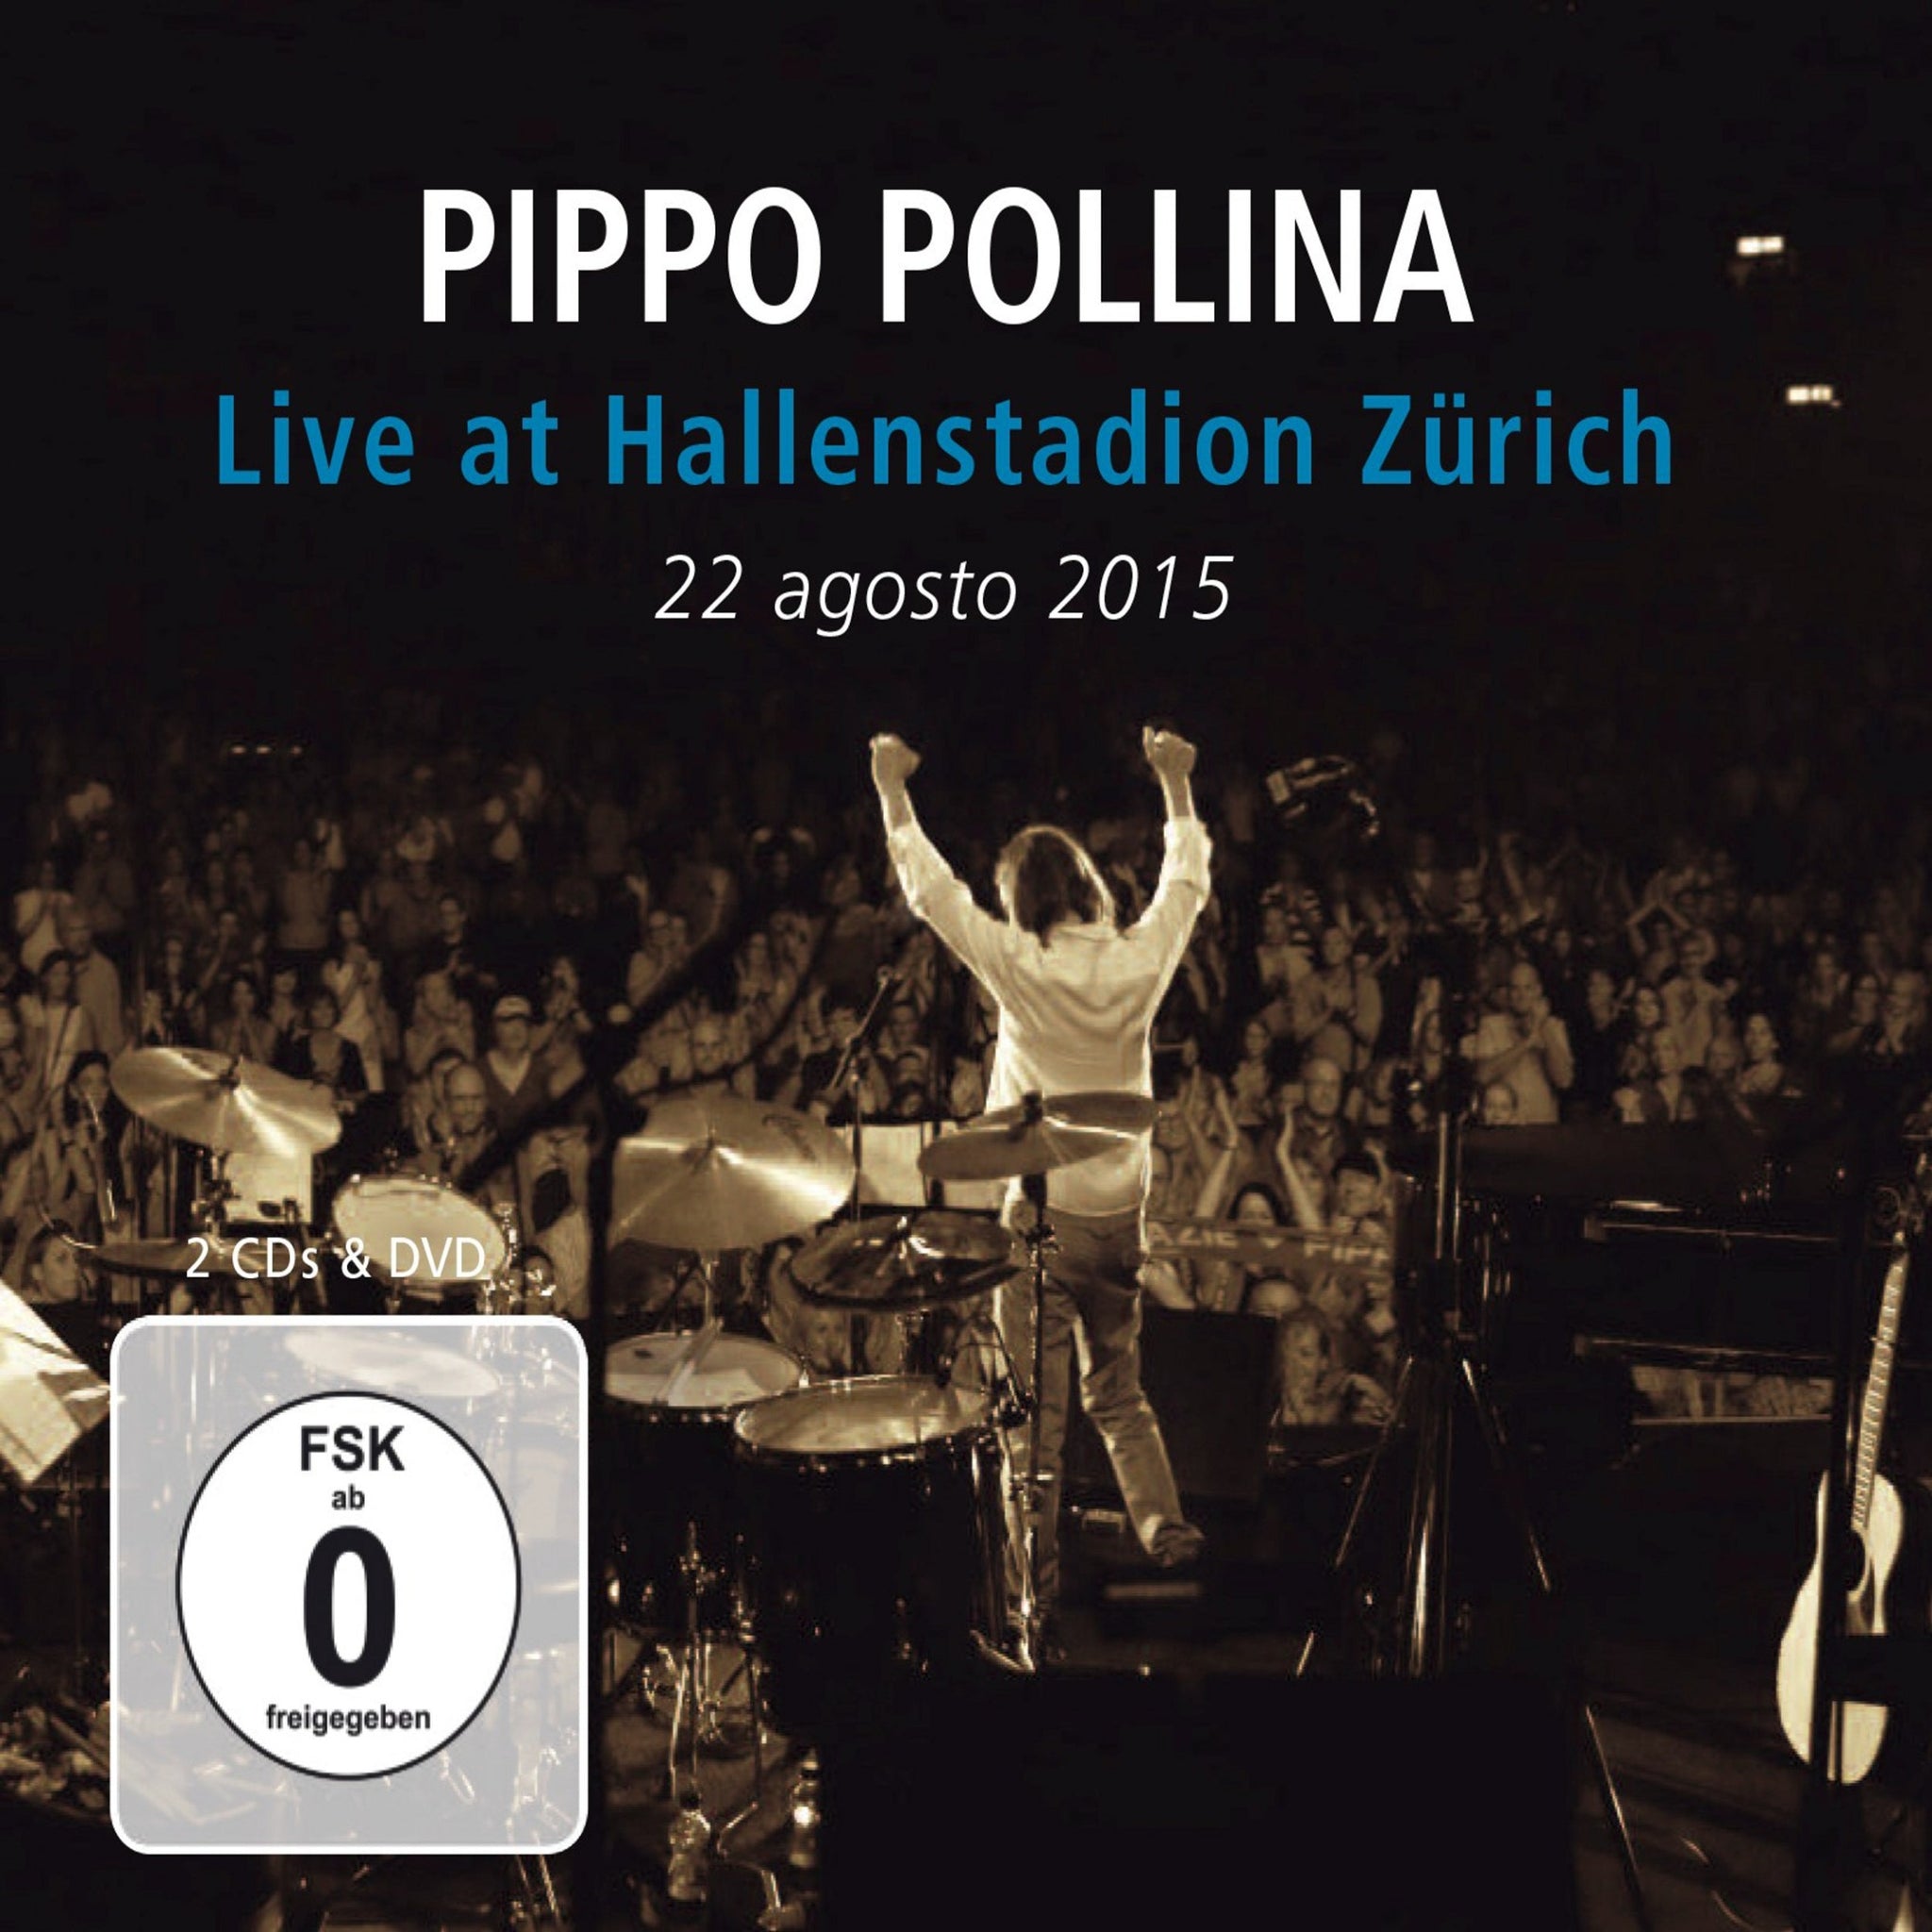 Pippo Pollina - Live At Hallenstadion Zürich (CD)